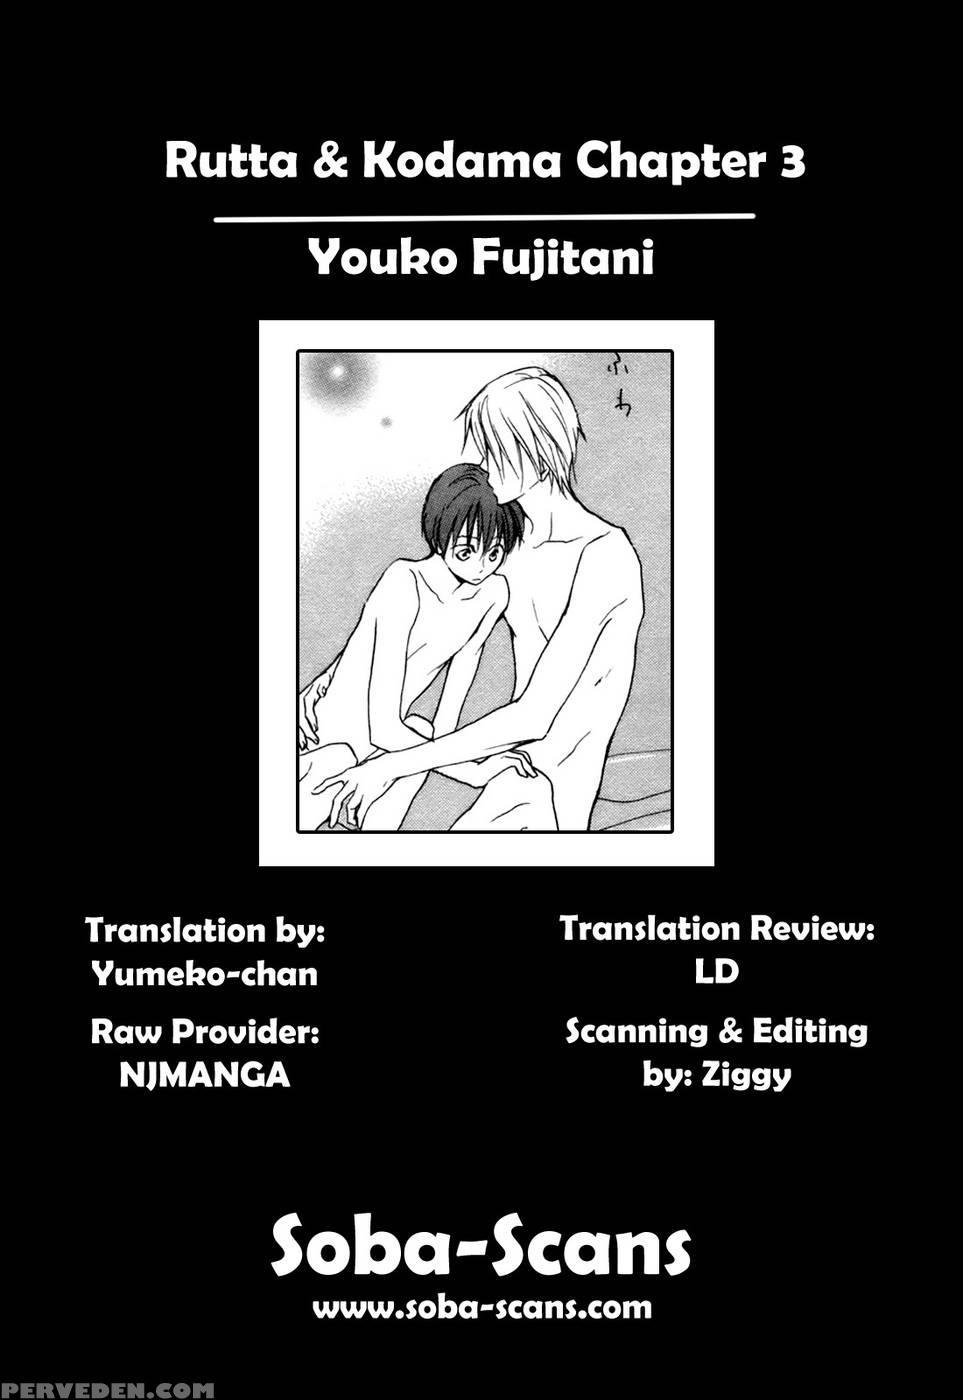 Rutta & Kodama Chapter 3 - Youko Fujitani 1